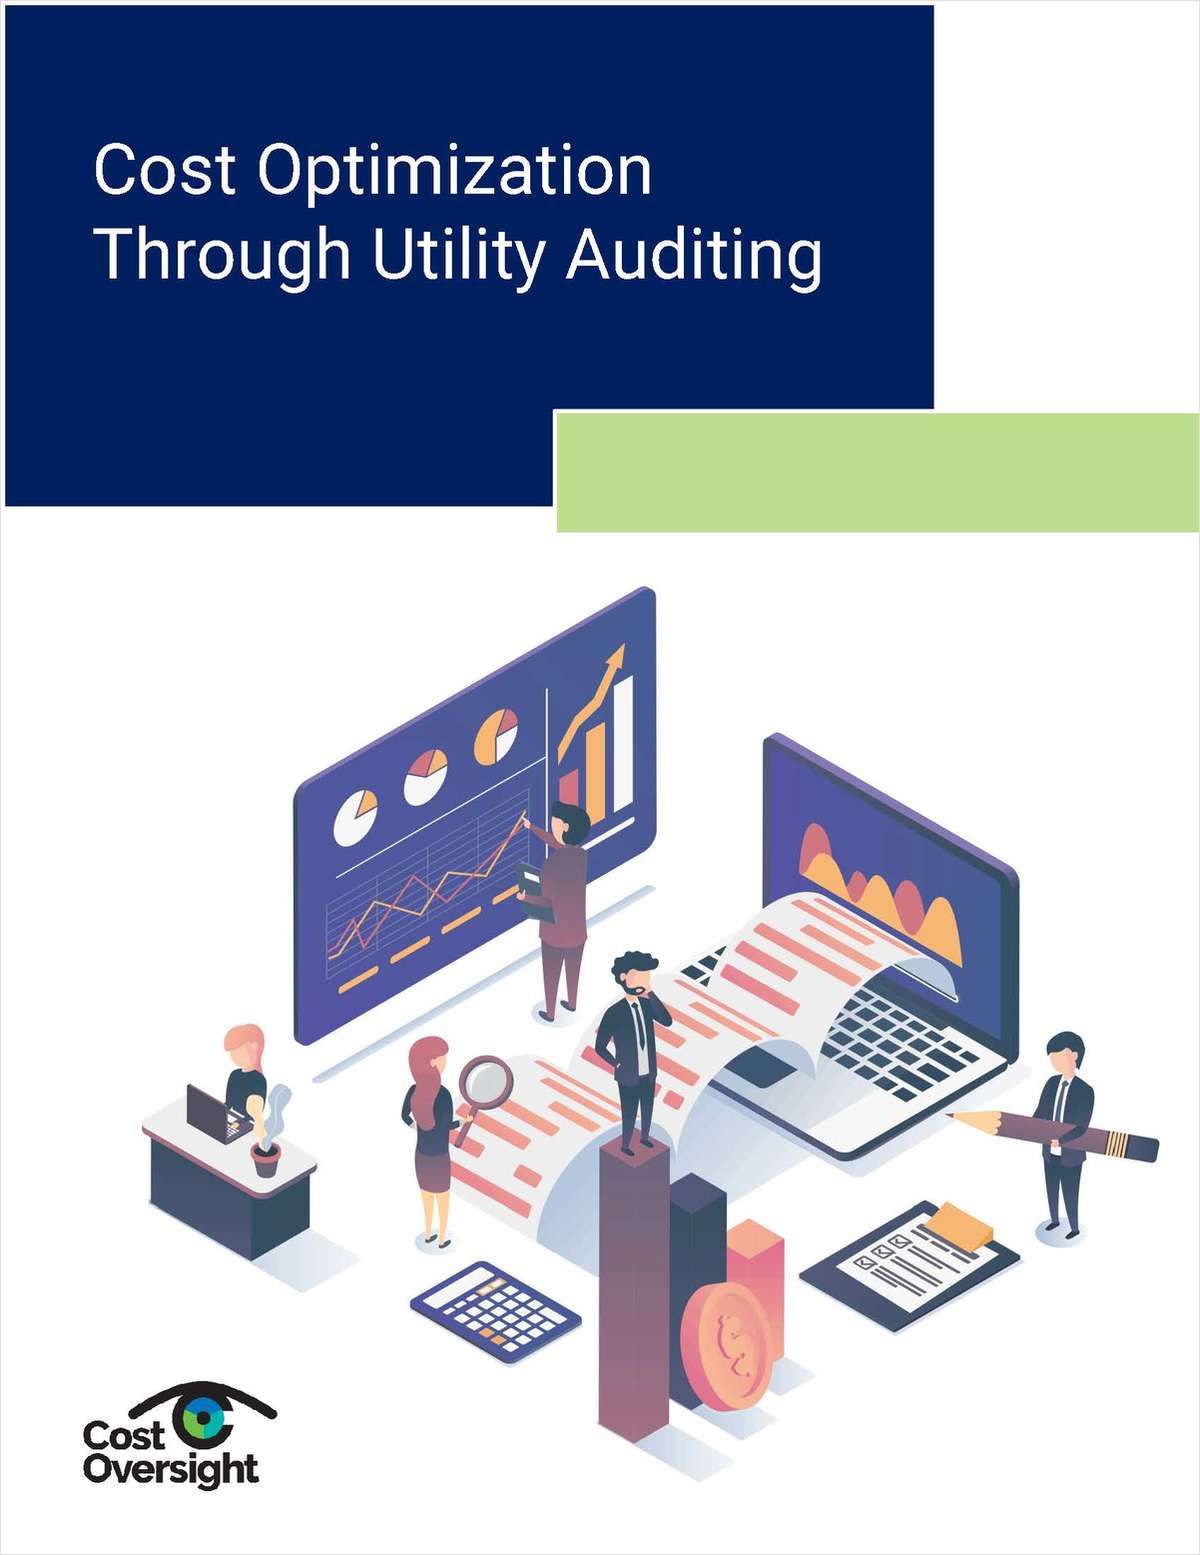 Increased Revenue Through Utility Auditing